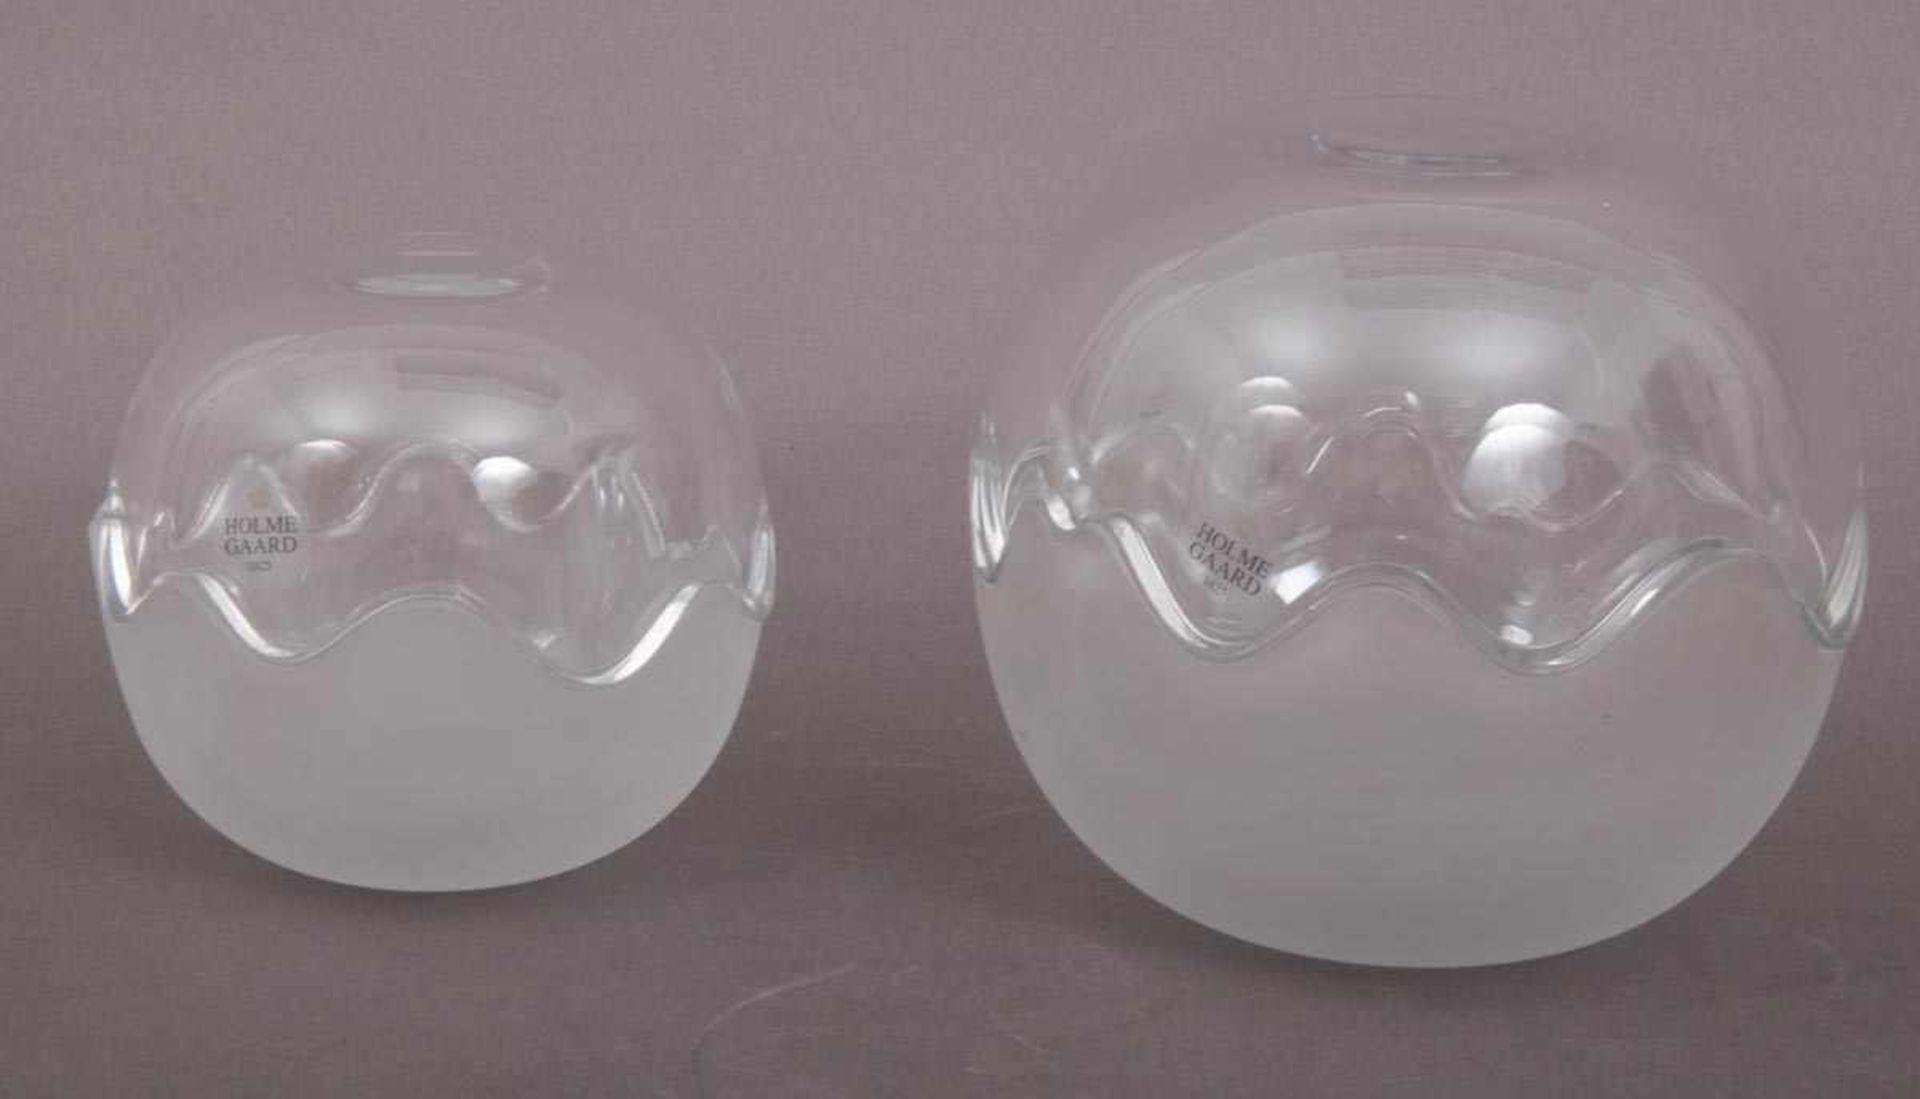 Holme Gaard Glasschalen-/Deckelschalenset, 4teiliges Set bestehend aus 4 Schalen in 2 Größen, 2